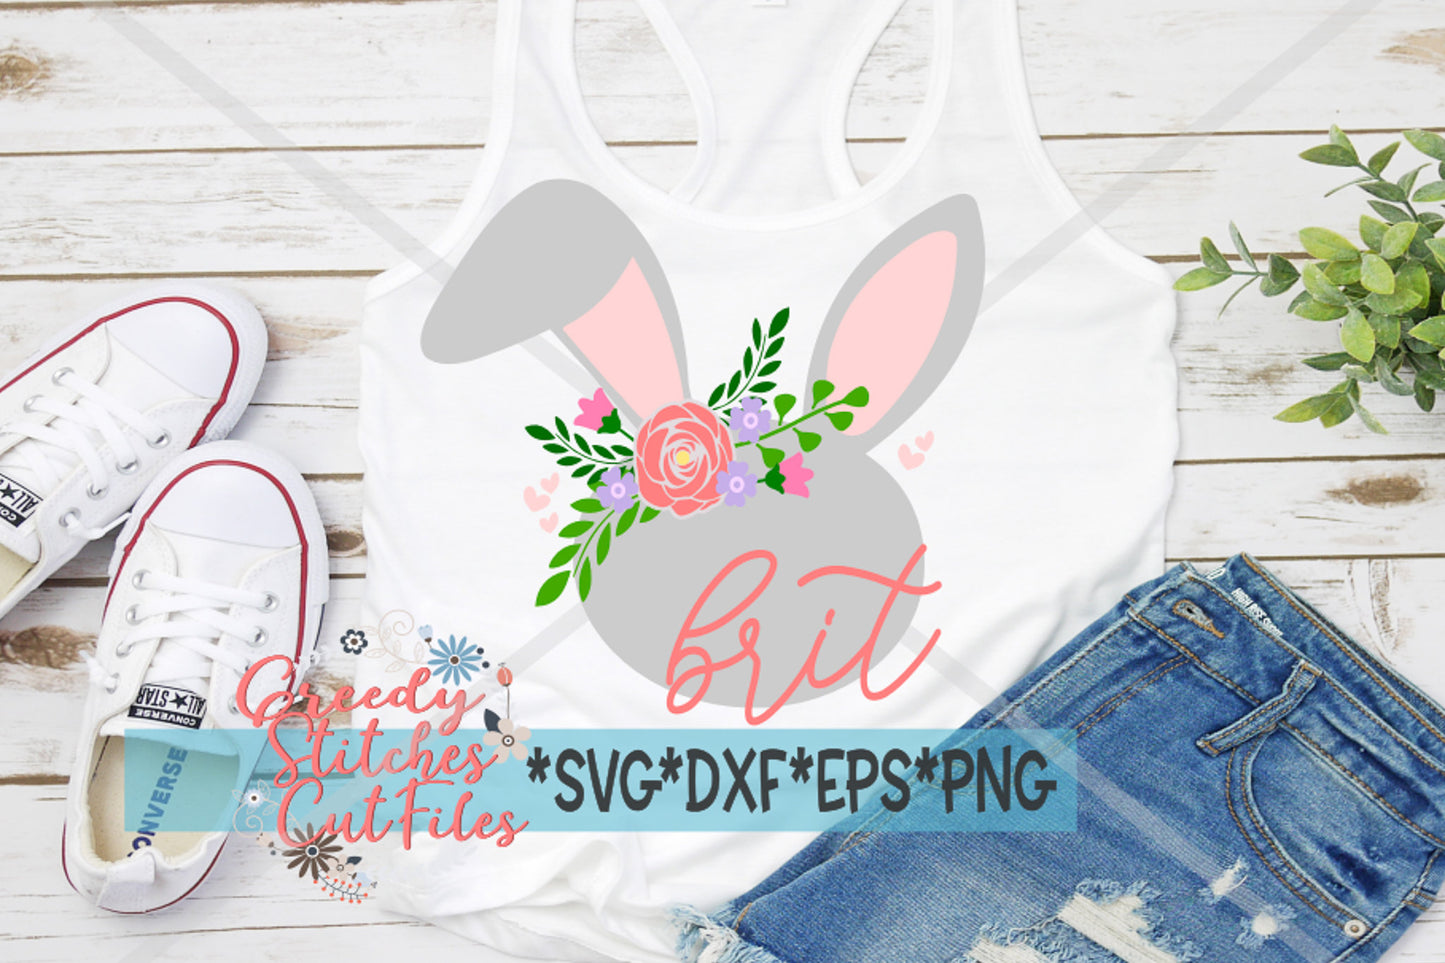 Easter SvG | Floral Bunny svg, dxf, eps, png. Easter SvG | Easter Bunny SvG | Floral SvG | Easter Girl SvG | Instant Download Cut File